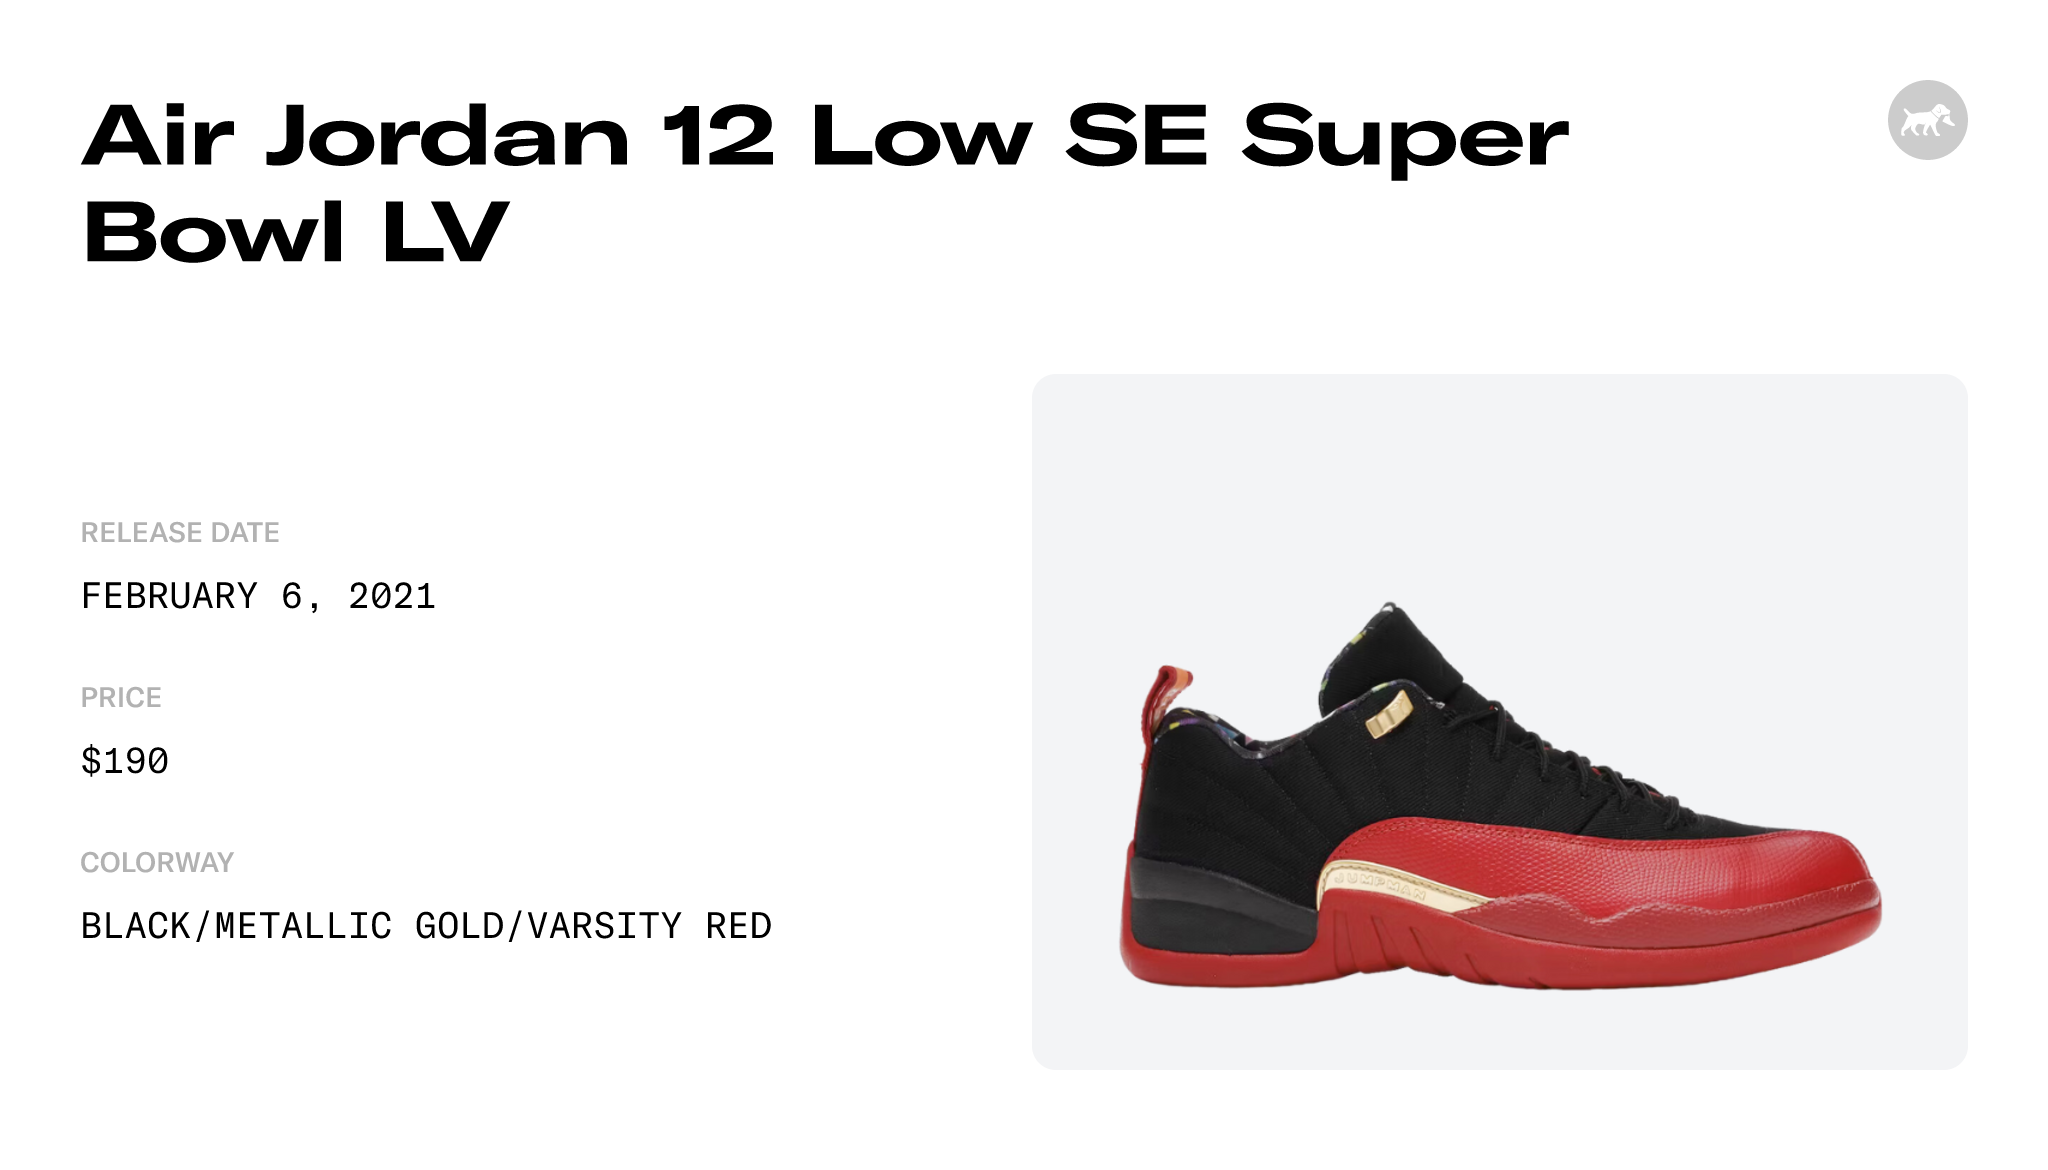 Air Jordan 12 Low SE Super Bowl LV Raffles and Release Date